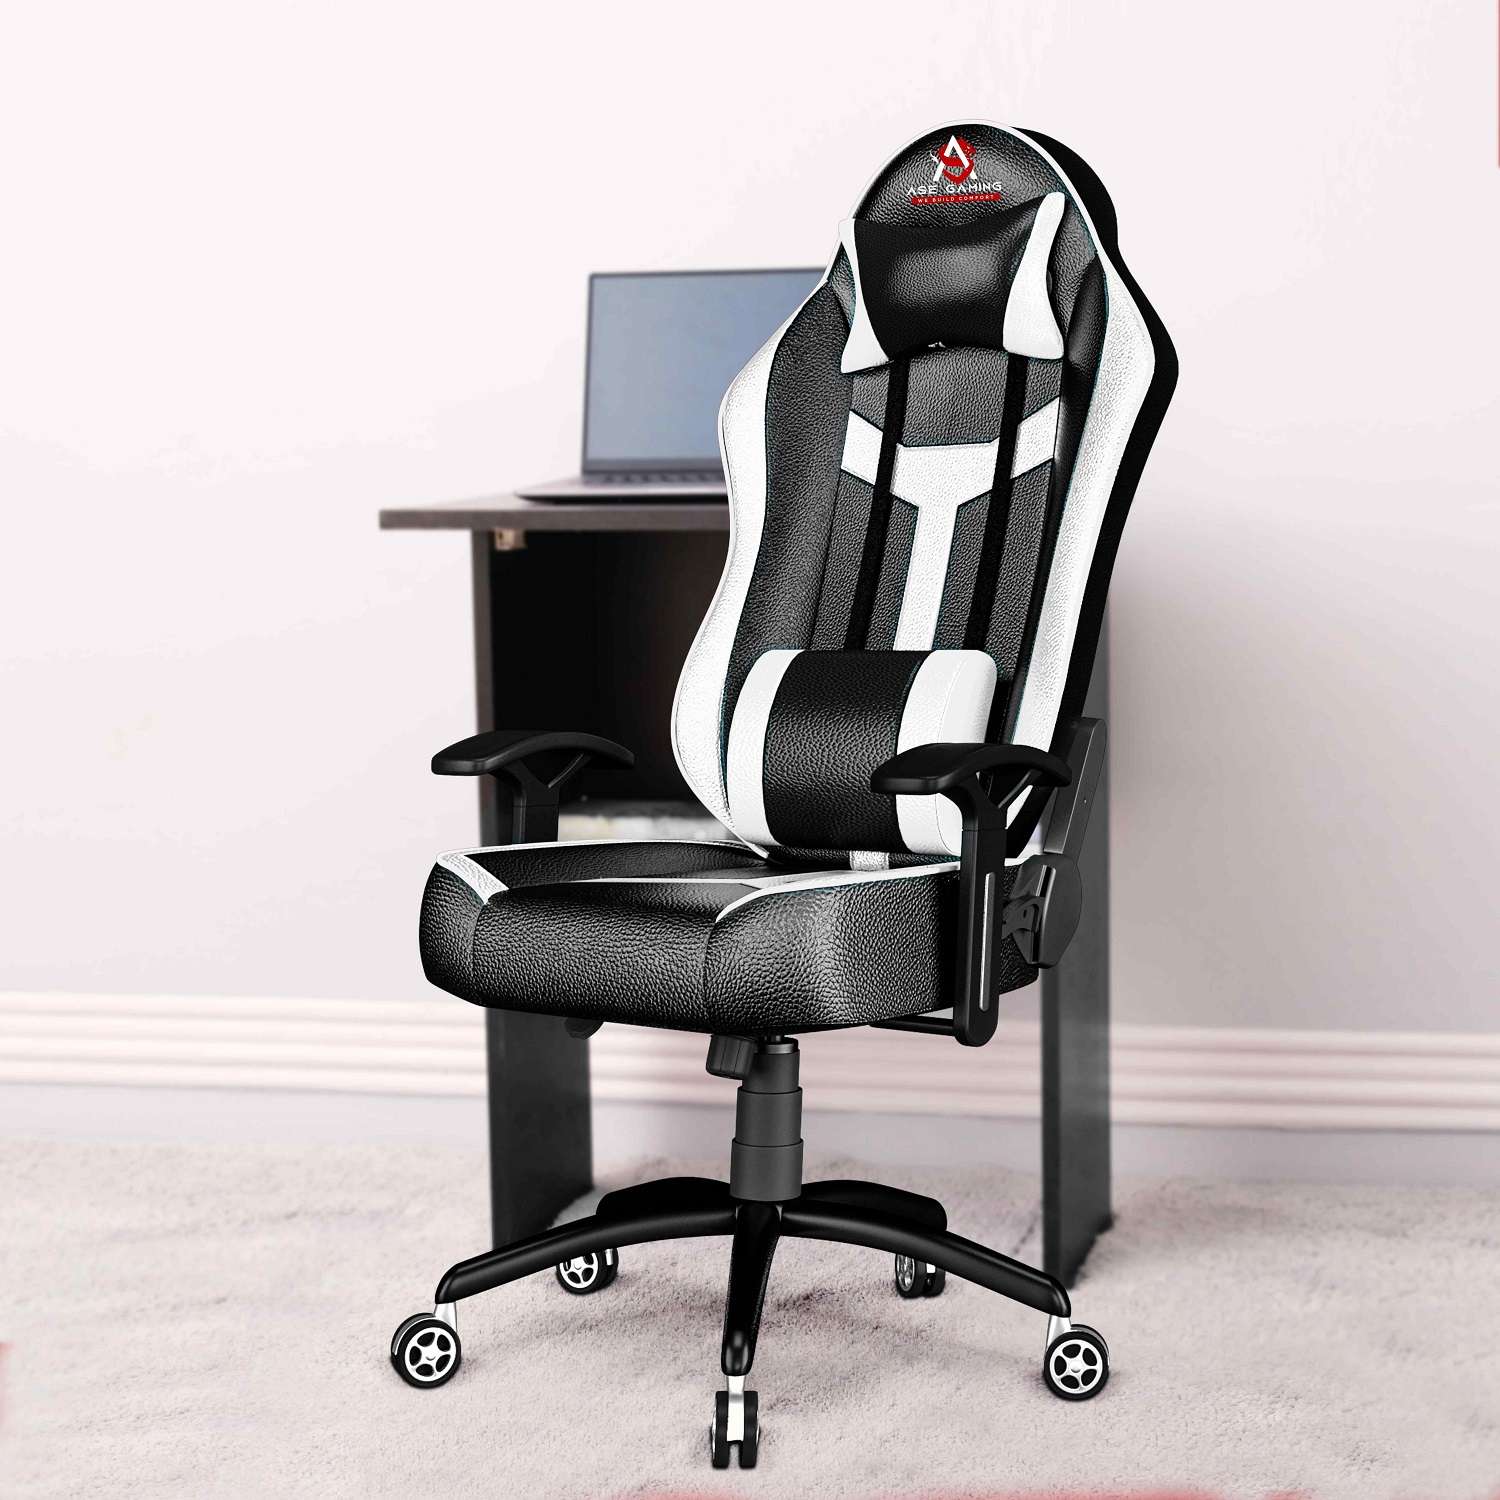 ASE Gaming Ranger Series Gaming Chair (Red & Black)